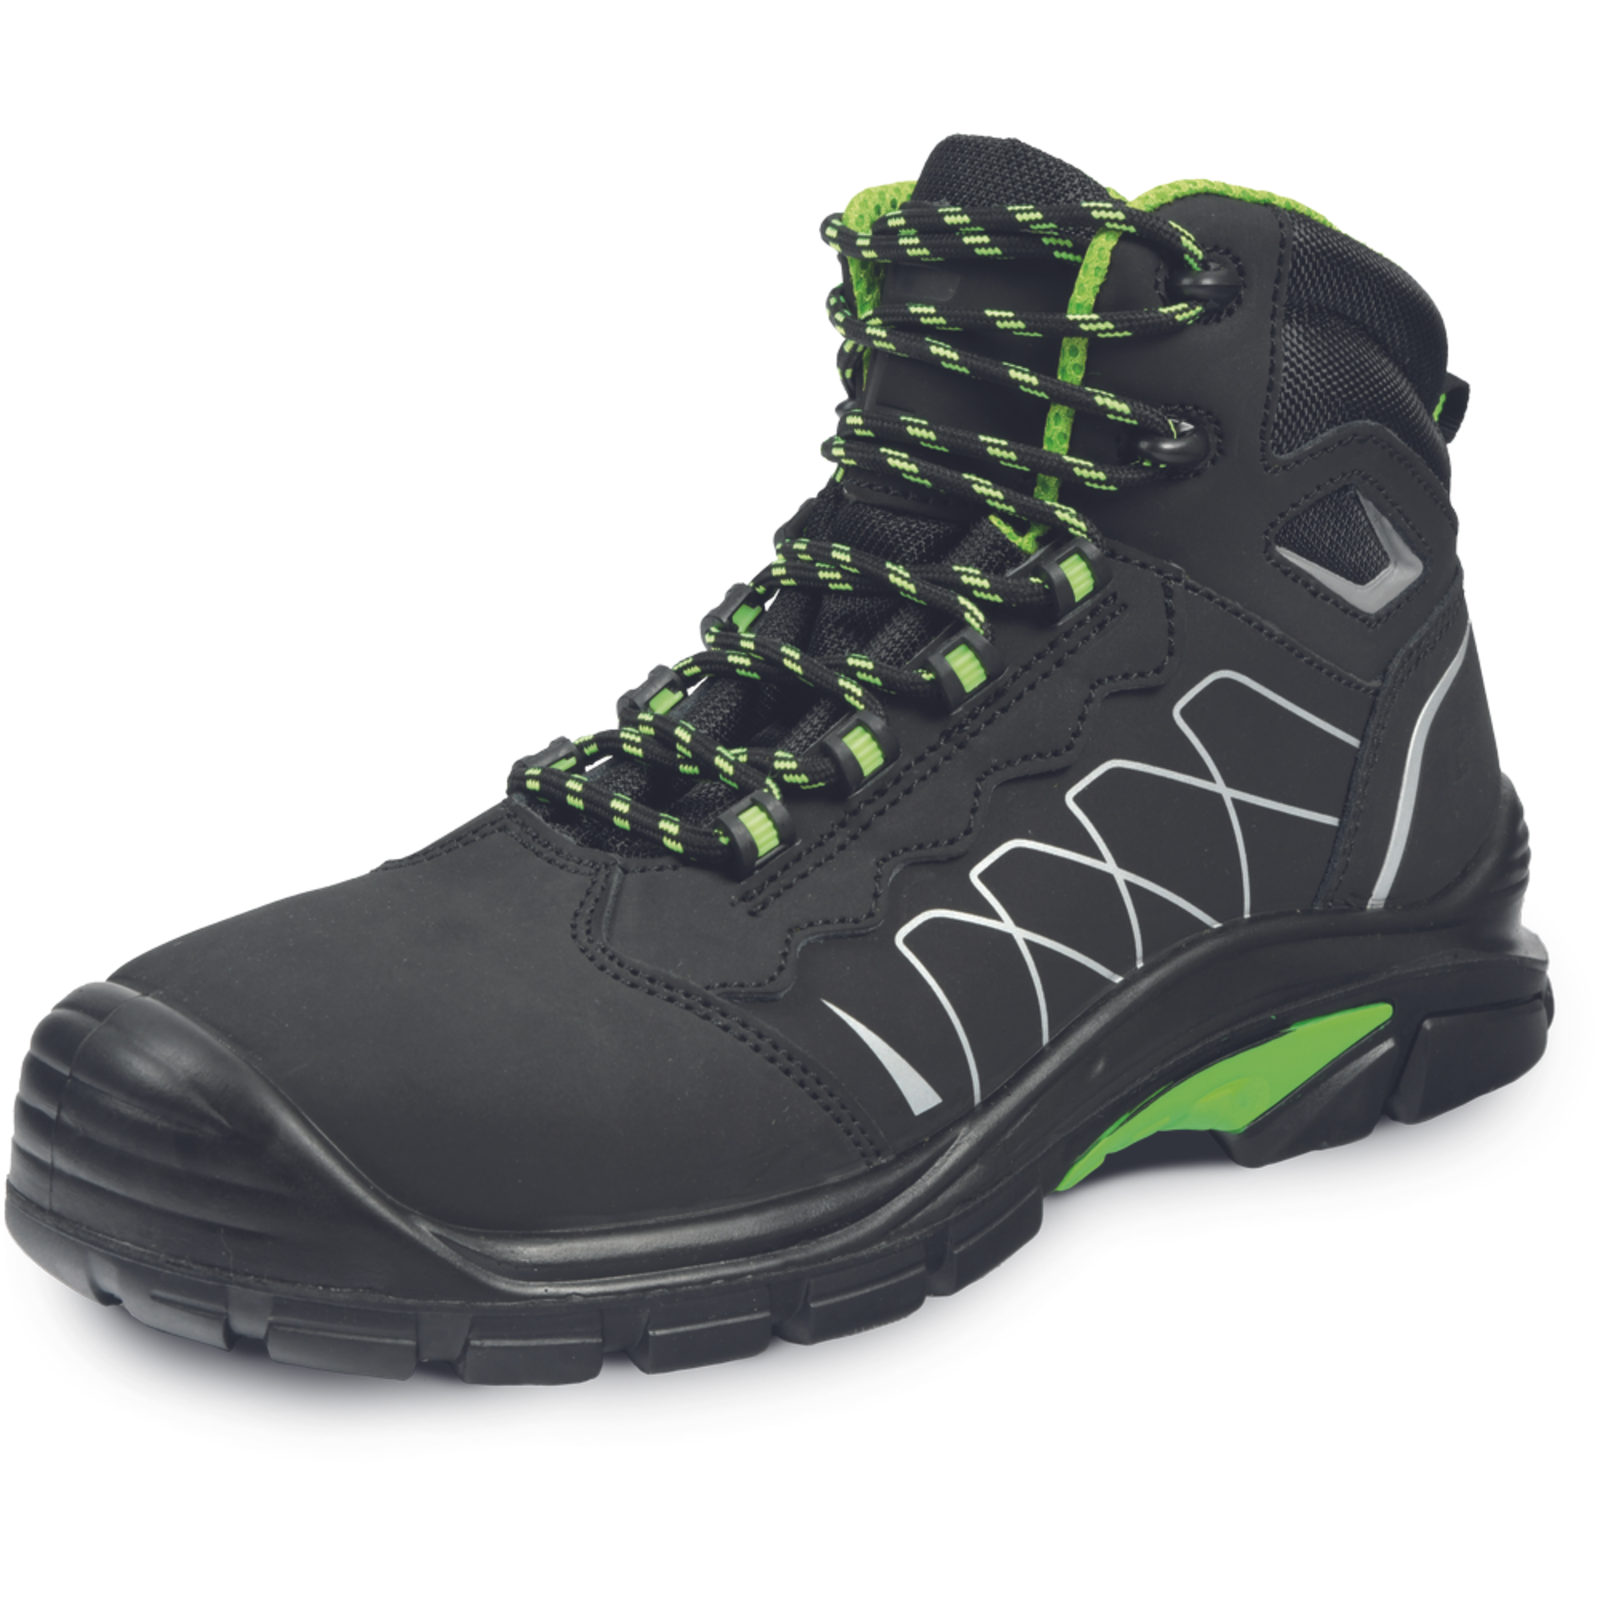 Bezpečnostná členková obuv Cerva Tornafort MF S3 SRC - veľkosť: 38, farba: čierna/zelená